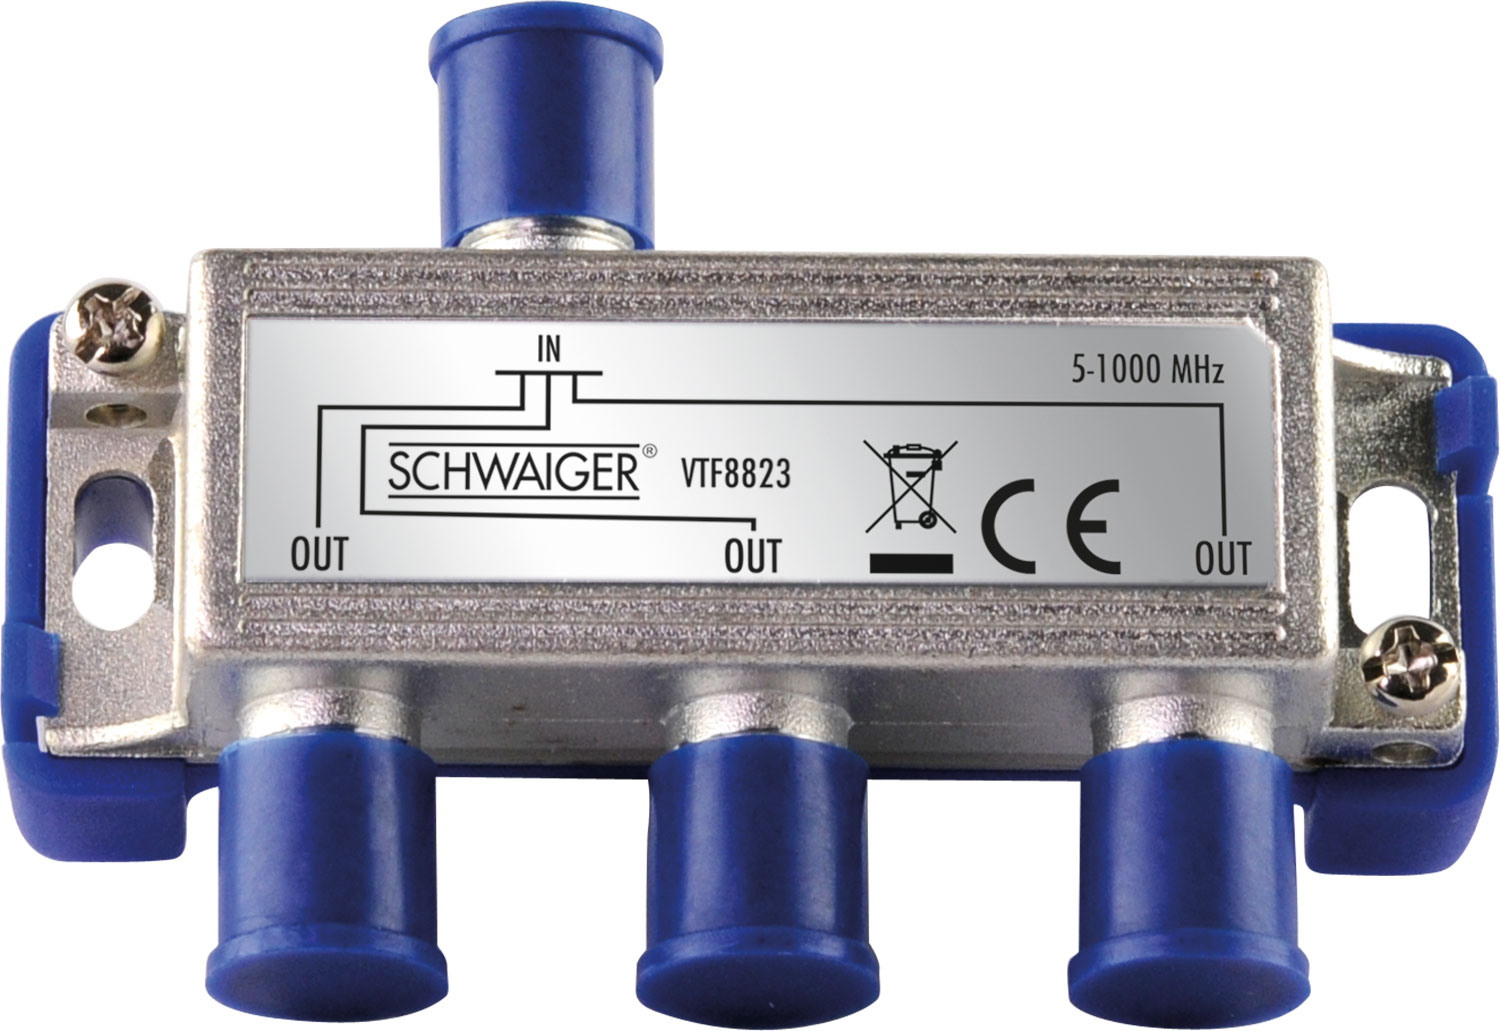 SCHWAIGER -VTF8823 241- 3-fach für Verteiler dB) Antennenanlagen (6.5 und Kabel